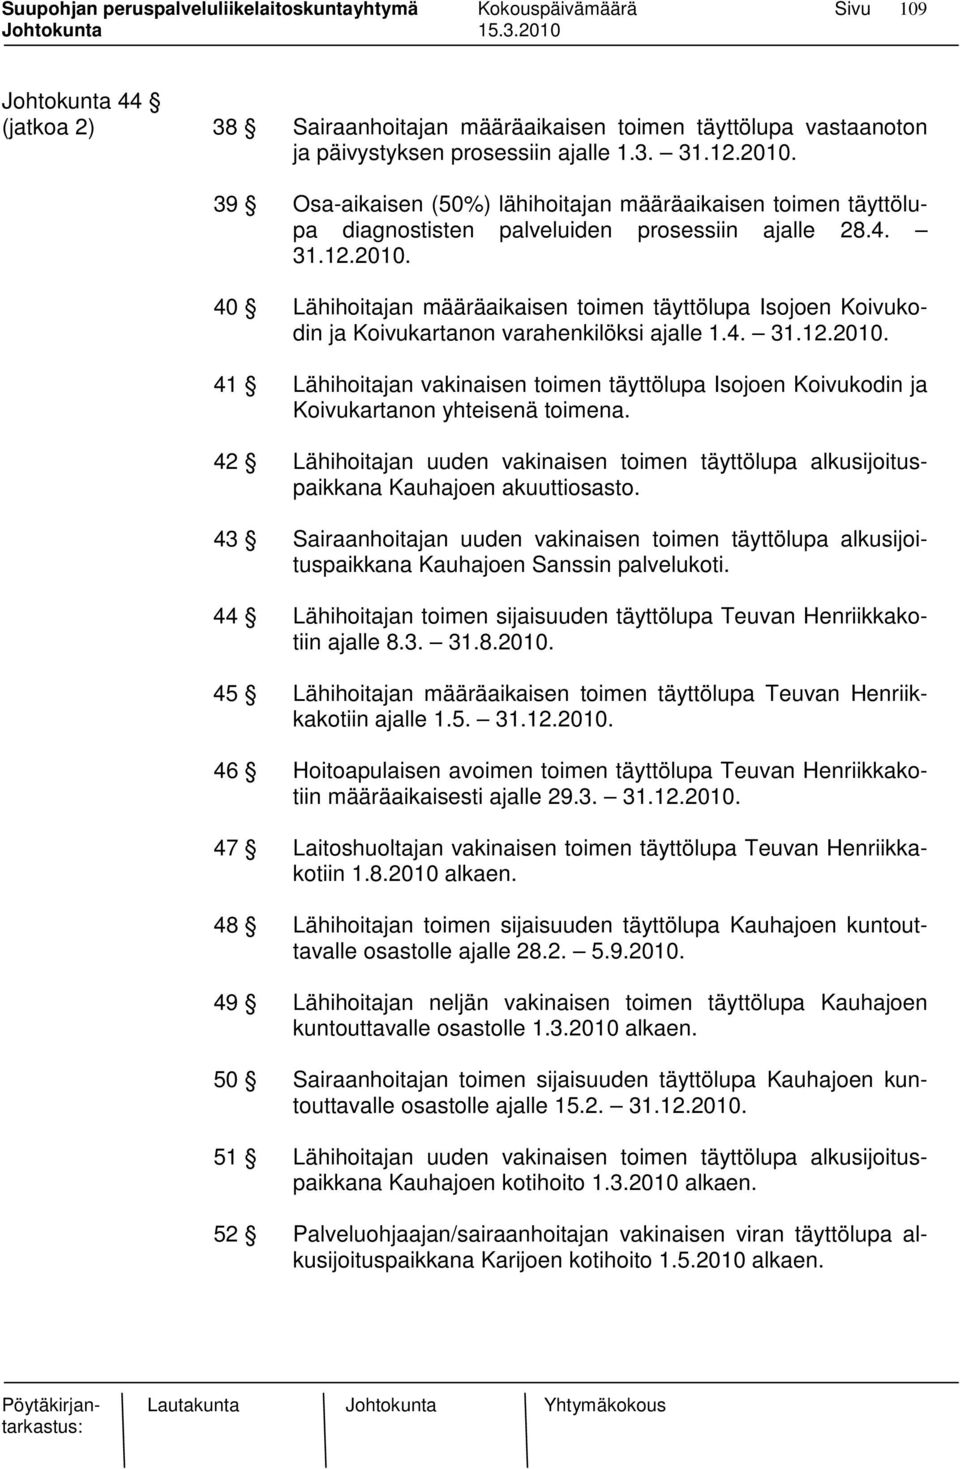 40 Lähihoitajan määräaikaisen toimen täyttölupa Isojoen Koivukodin ja Koivukartanon varahenkilöksi ajalle 1.4. 31.12.2010.